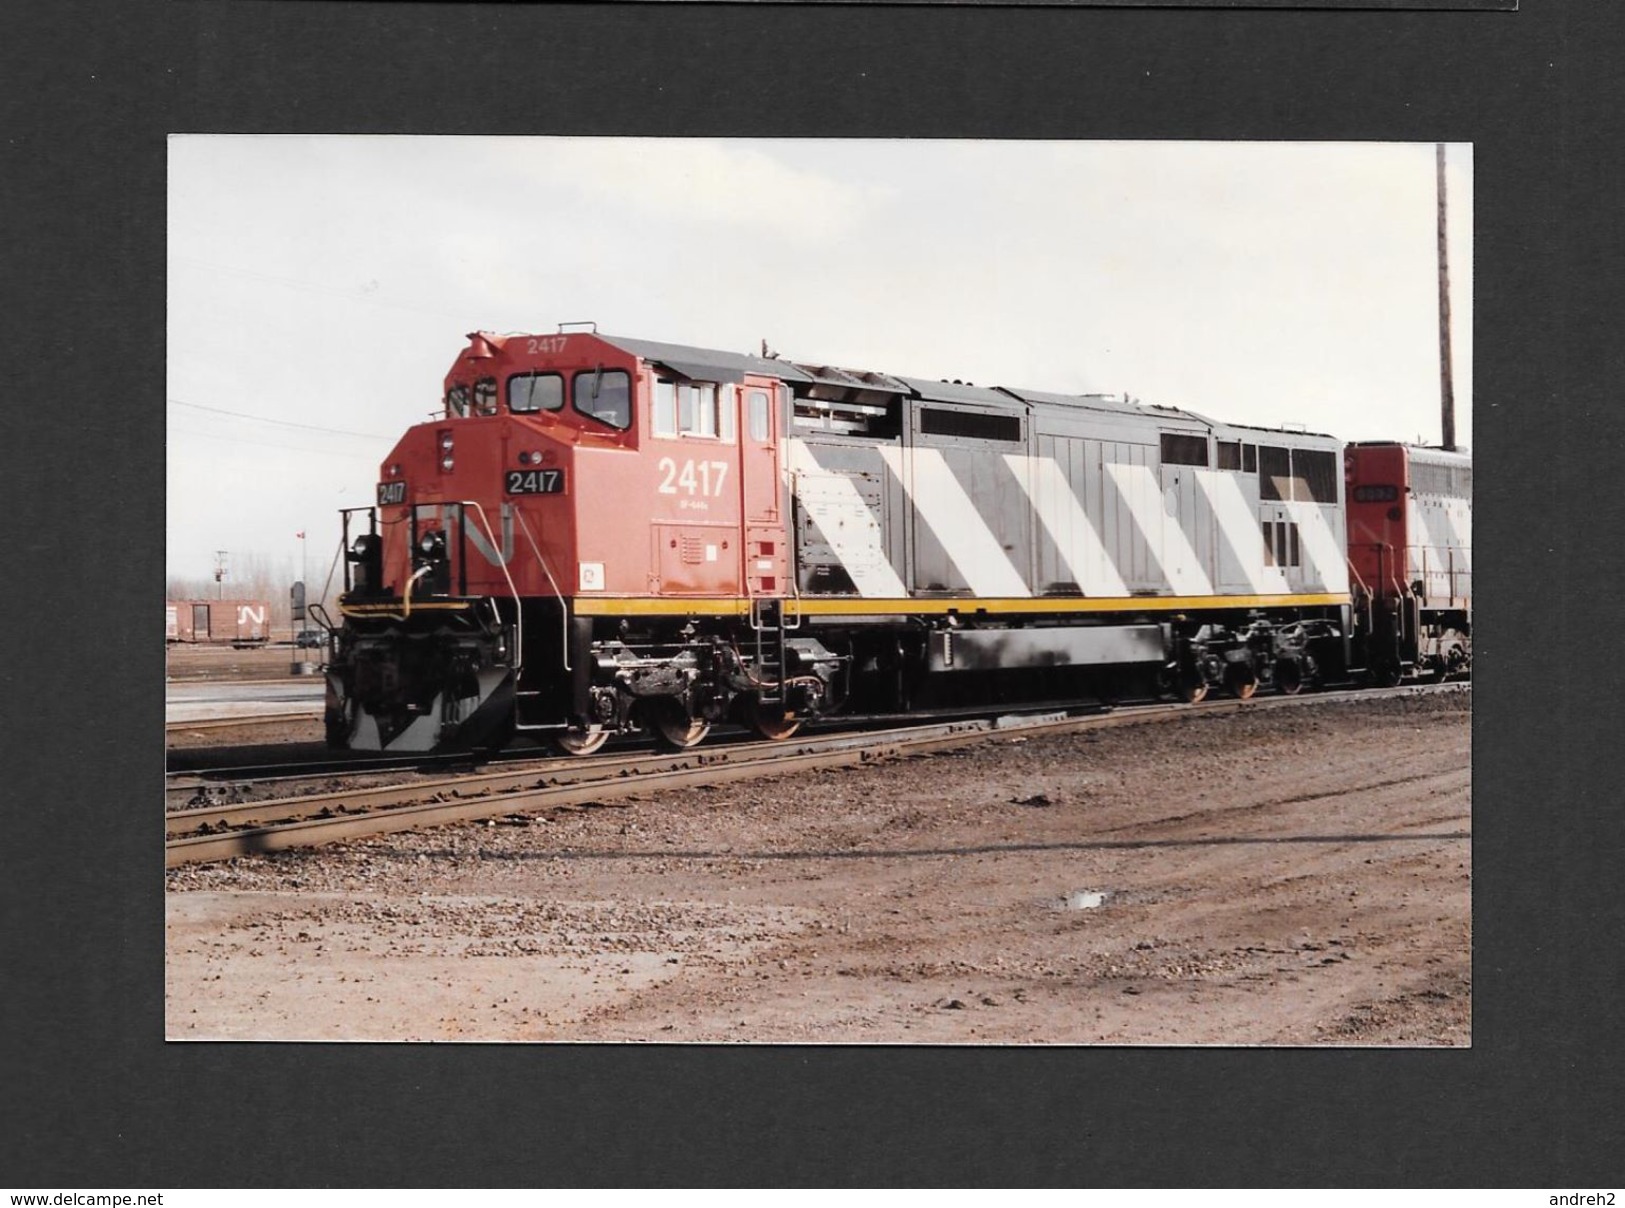 TRAINS - TRIAGE TASCHEREAU MONTRÉAL - QUÉBEC - LOCOMOTIVE 2417 (DASH 8-40CM) DU CANADIEN NATIONAL - 10x15 Cm - Trains